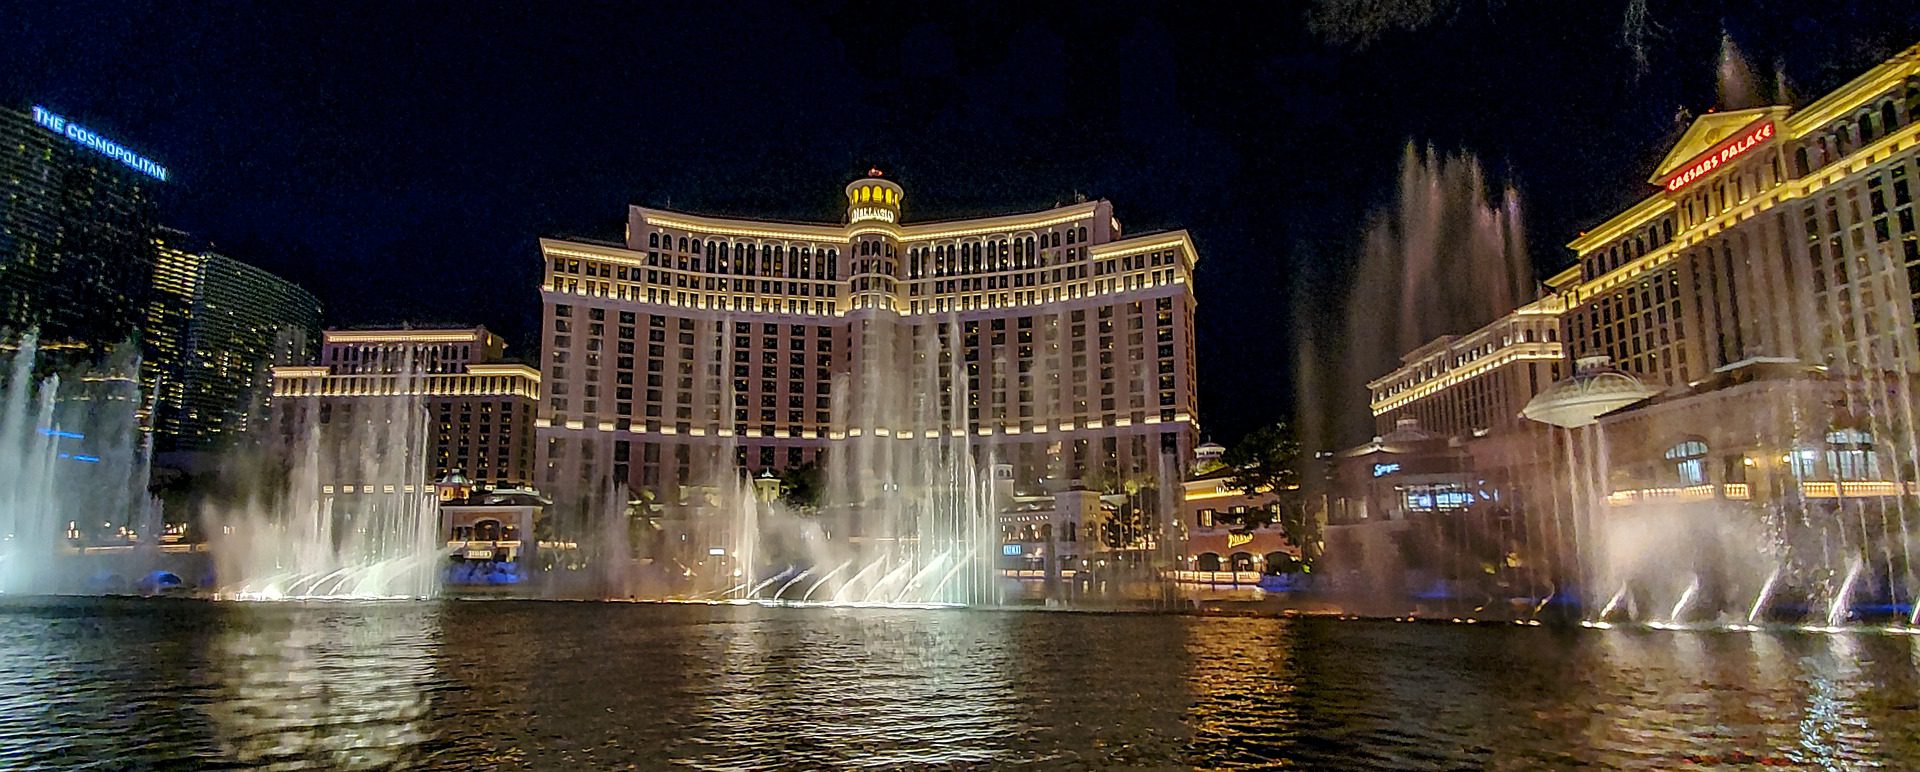 Fountains of Bellagio, Bellagio, Las Vegas